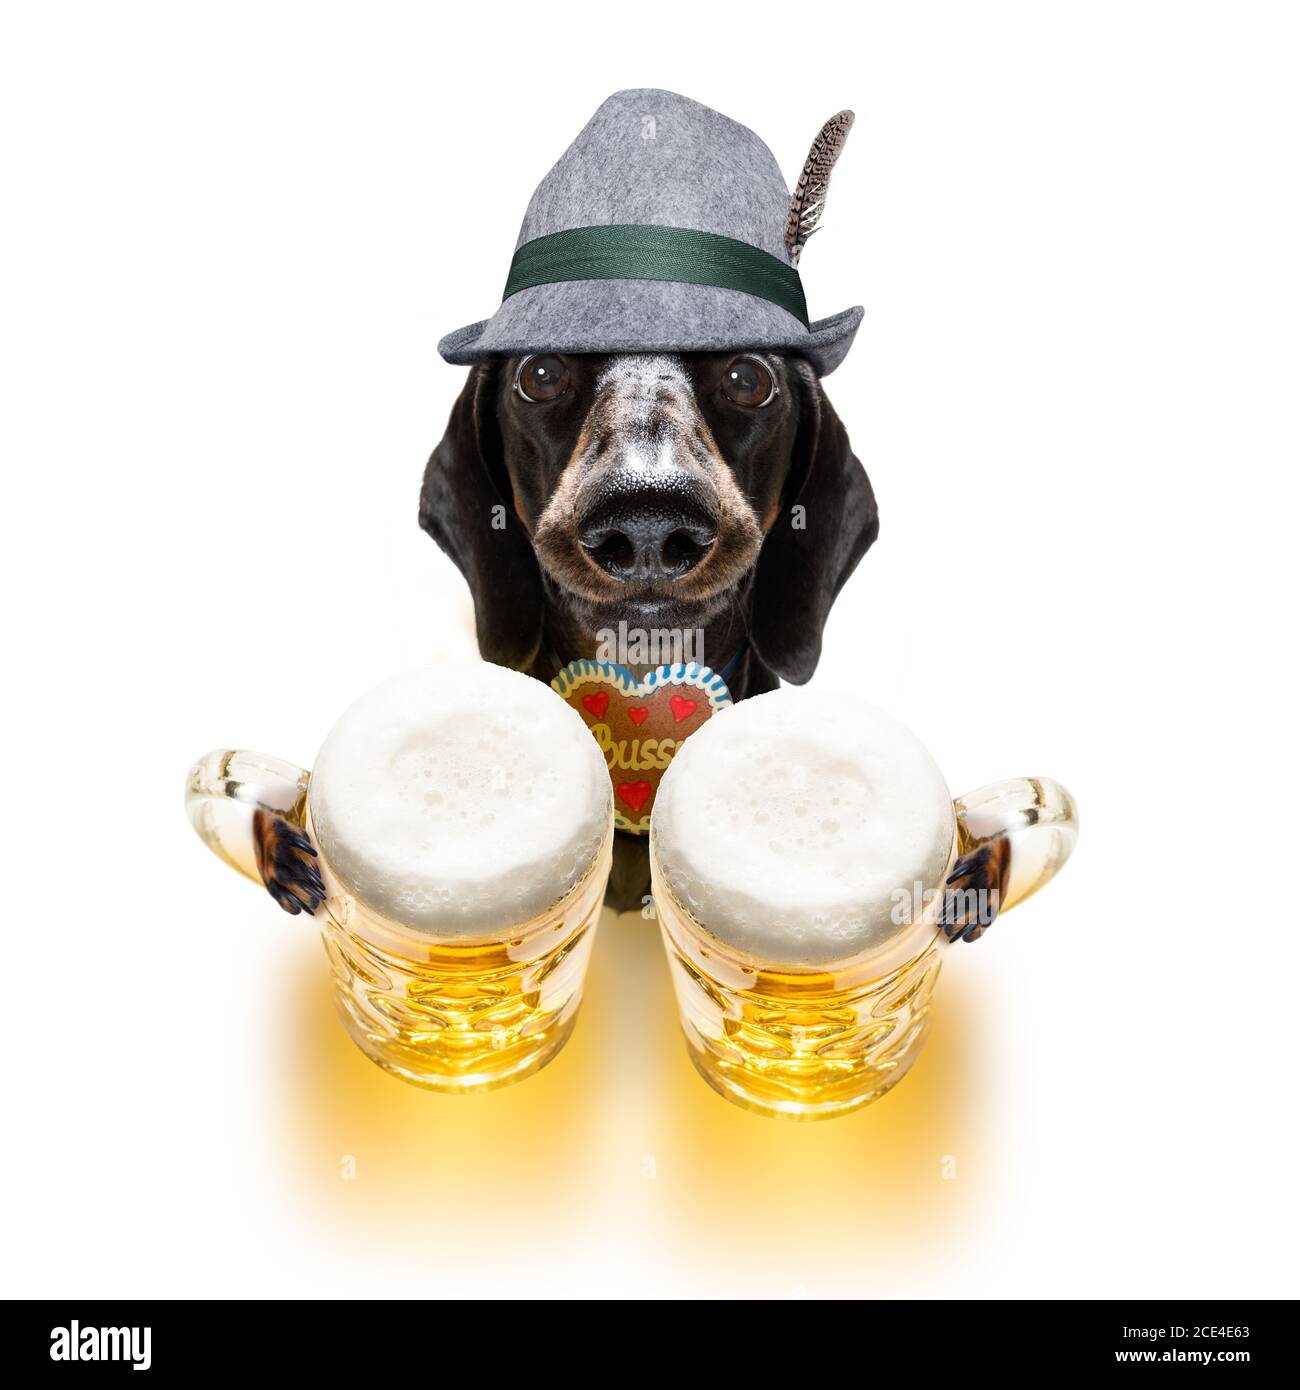 bayerisches Bier Dackel Wurst Hund Stockfotografie - Alamy